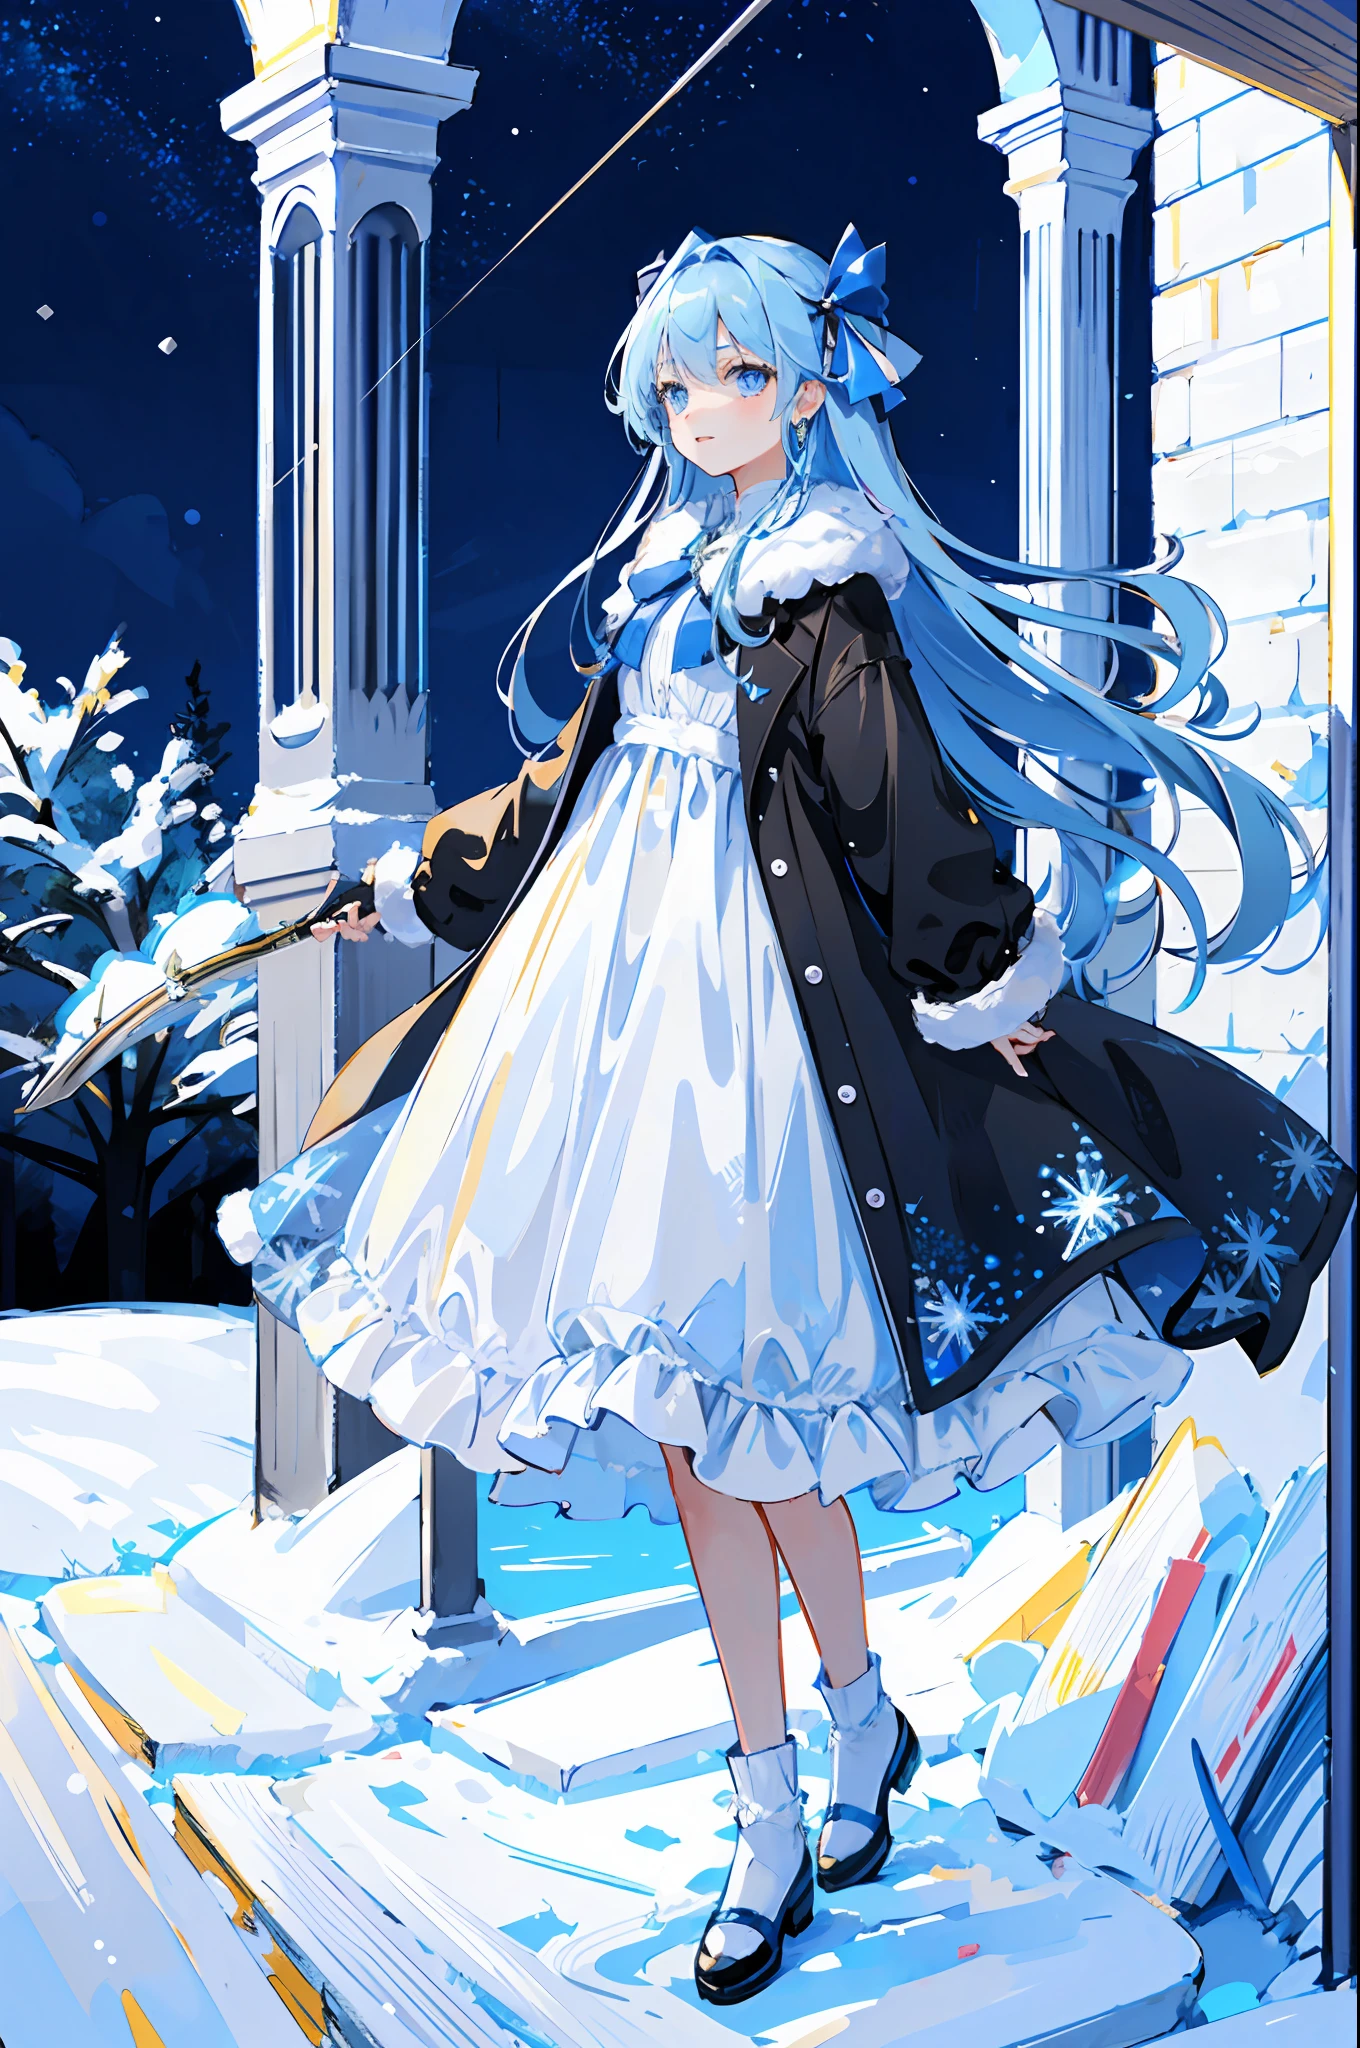 Макет чартера, все тело, молодая девушка, Светло-голубые длинные волосы, голубые глаза, в окружении снежинок, Сине-белое длинное платье, звездное небо с сильным снегопадом, лук и стрелы с эффектами льда и снега, прикольное платье, деталь одежды, стоящая картина на белом фоне